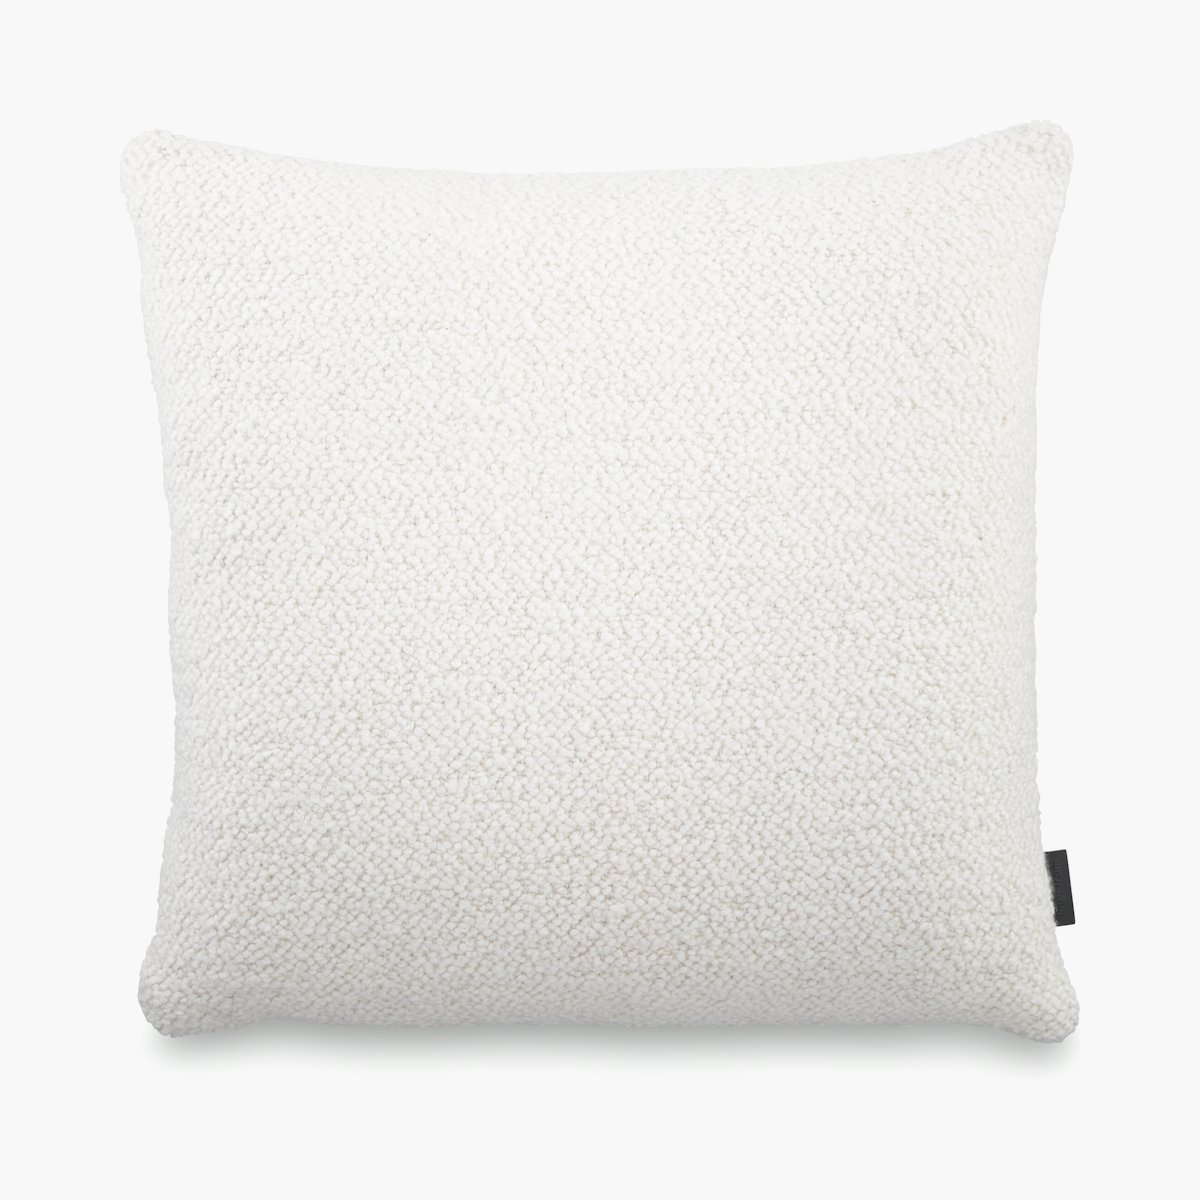 Roam Pillow